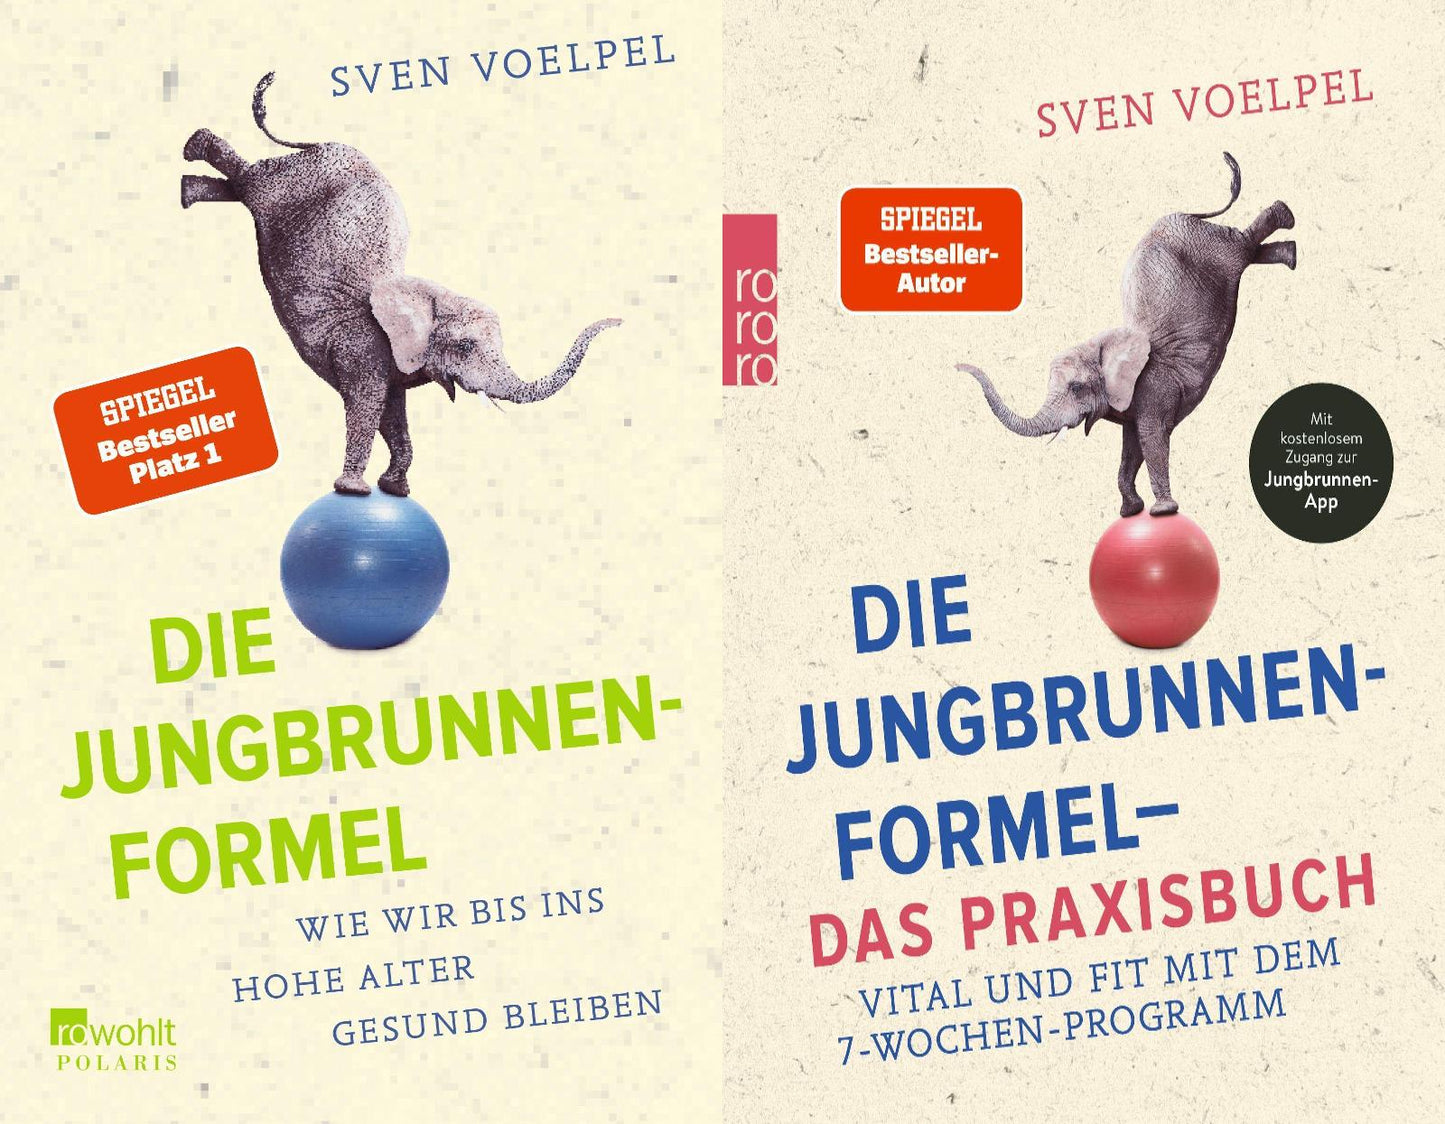 Die Jungbrunnen-Formel + Praxisbuch von Sven Voelpel + 1 exklusives Postkartenset